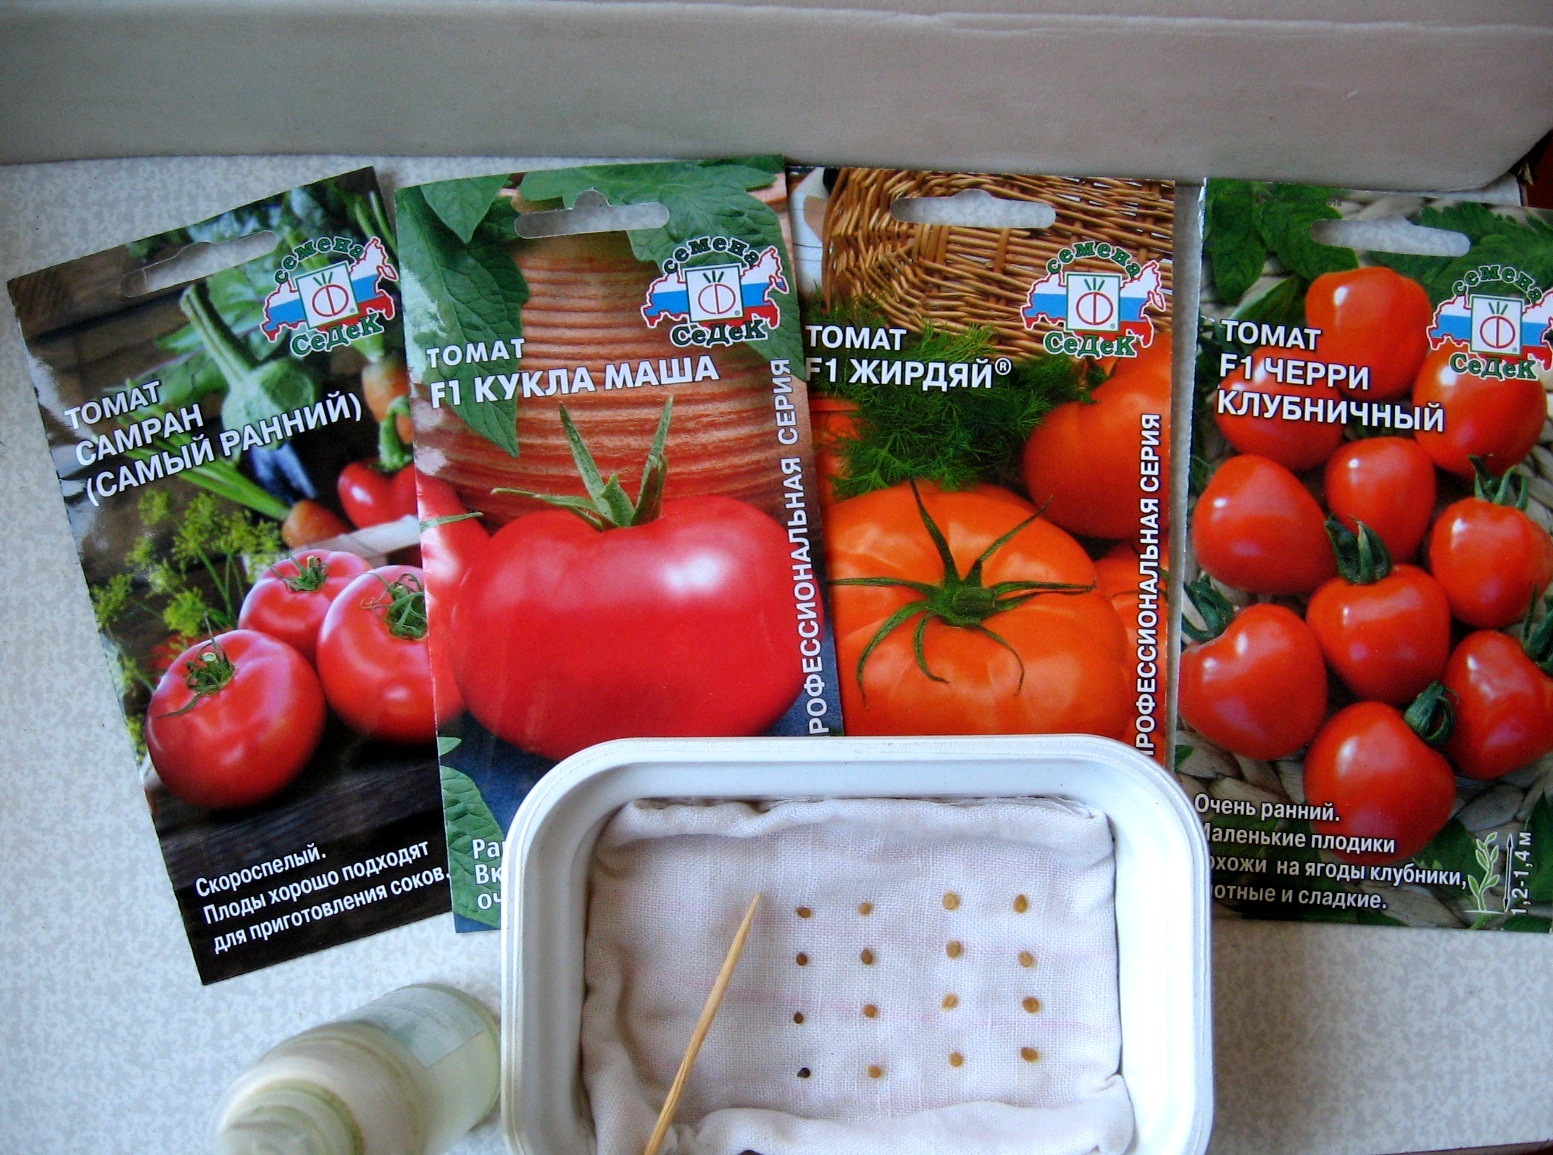 Семена СЕДЕК томат жирдяй